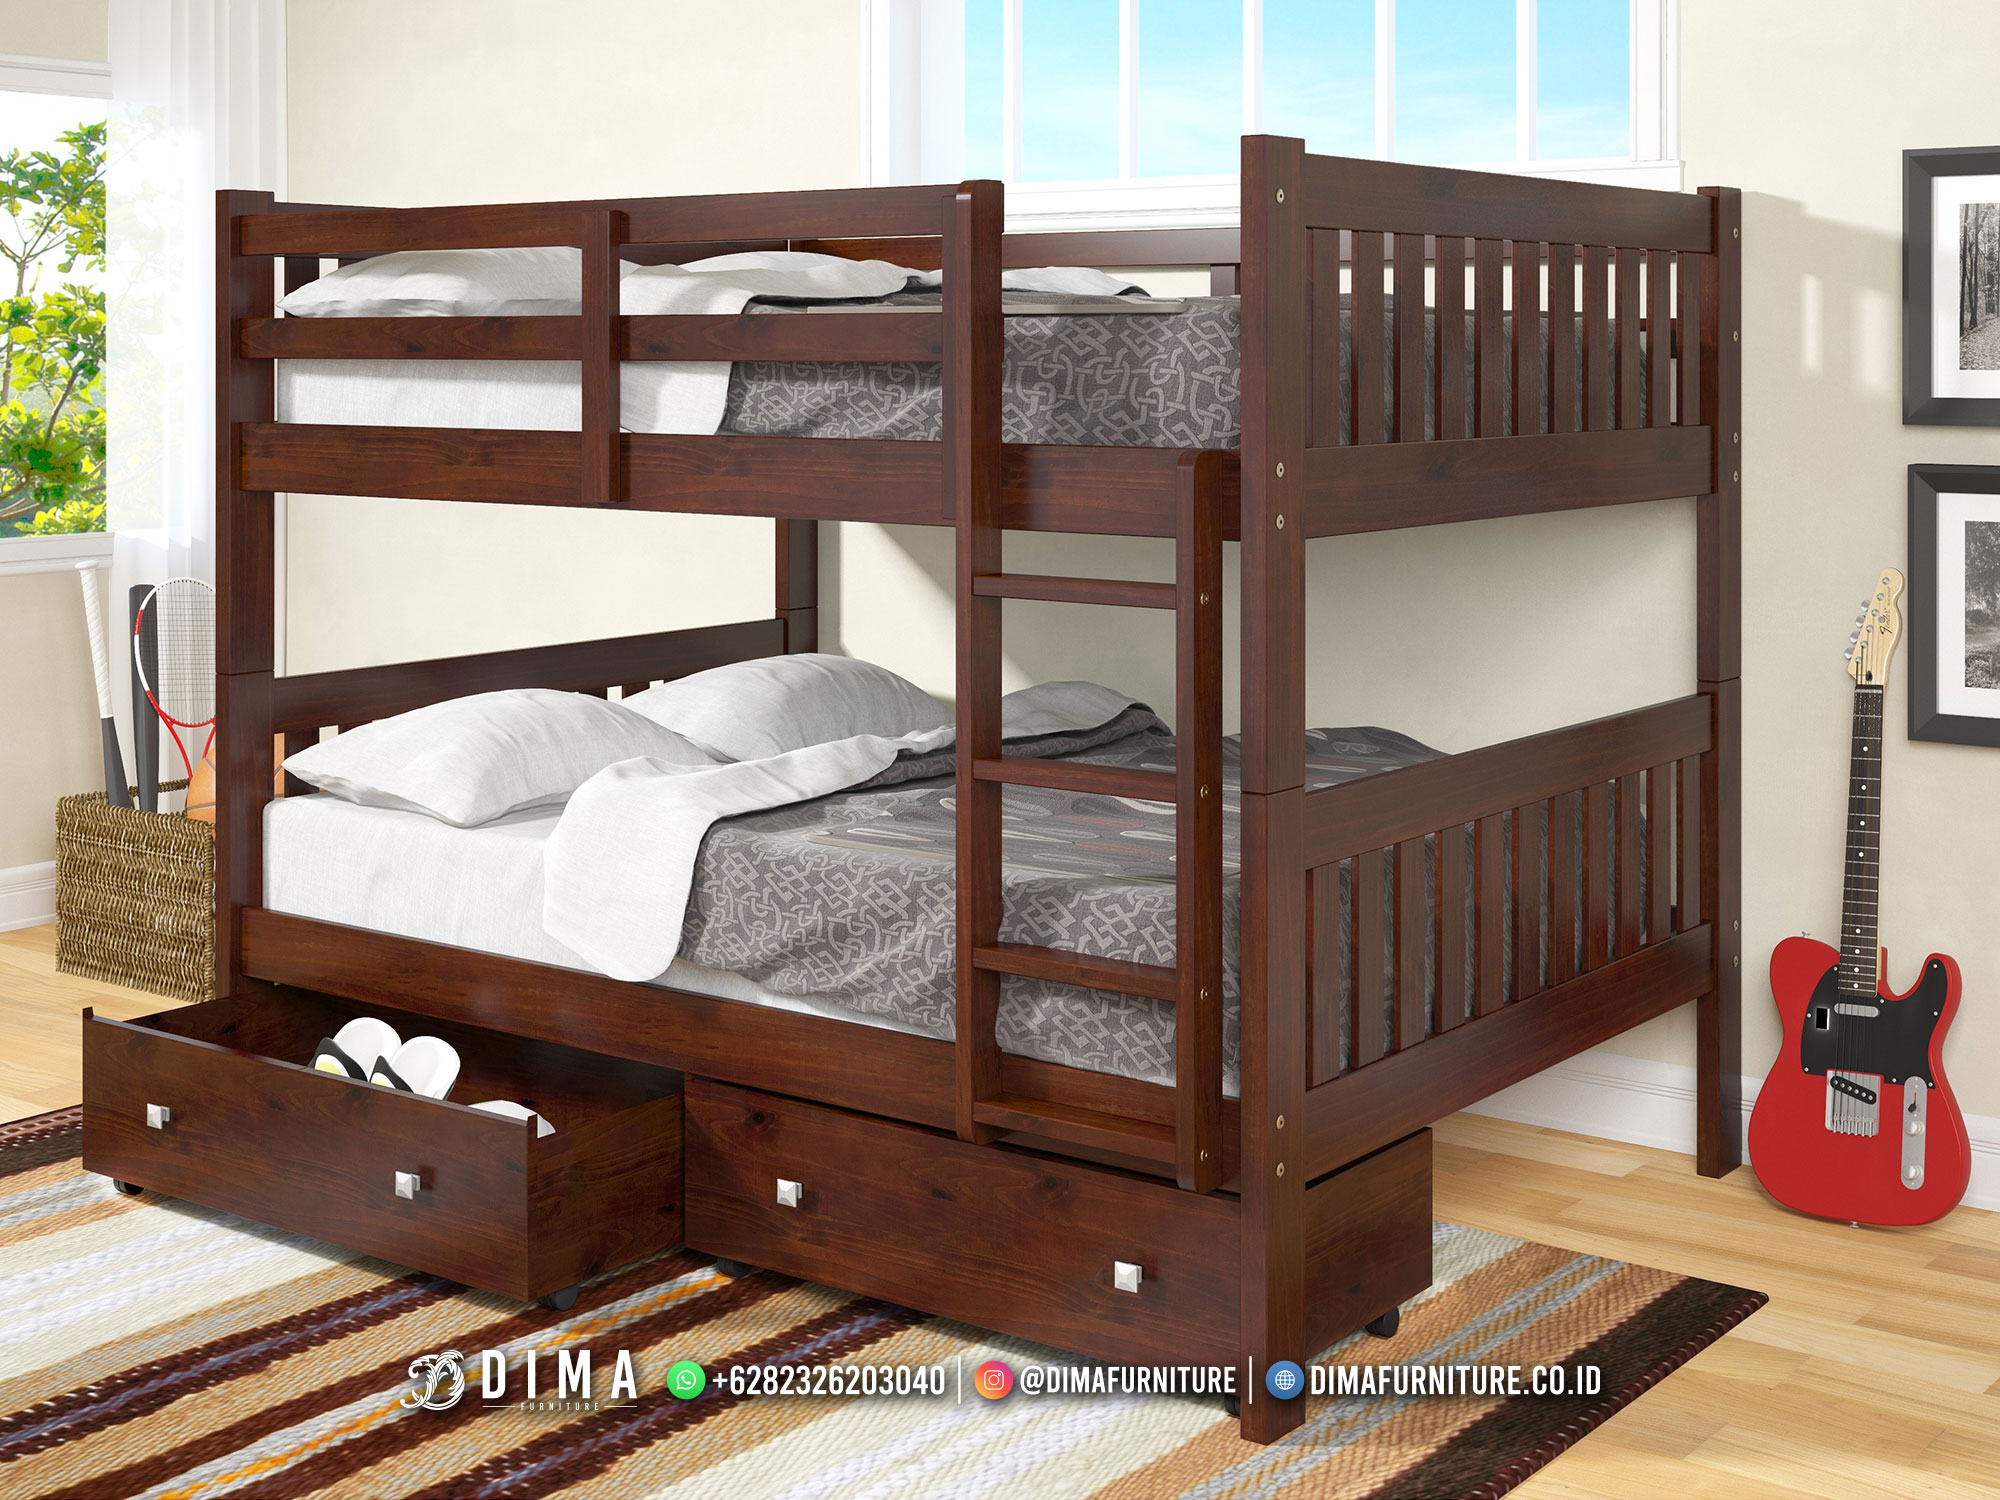 Jual Tempat Tidur Anak Jati Dipan Tingkat Minimalis Solid Wood DF-2361